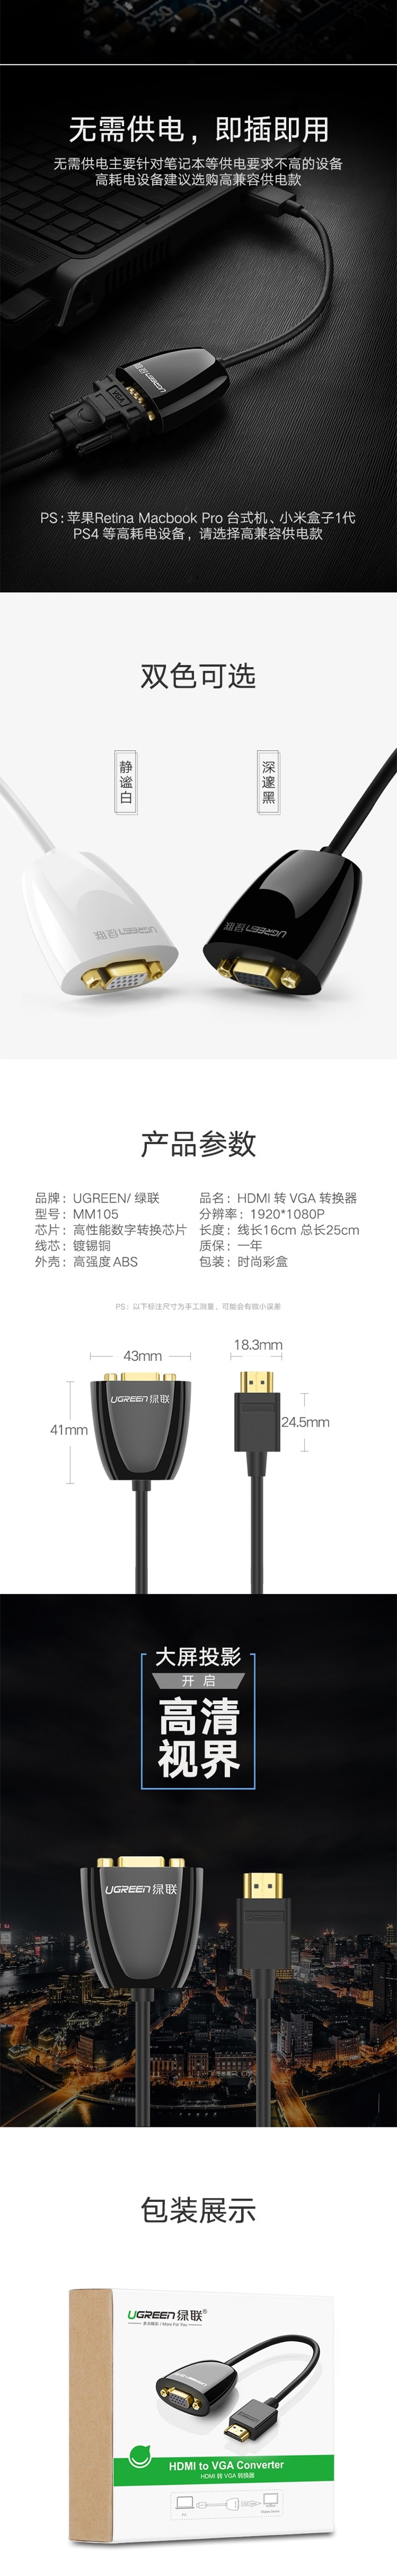 绿联HDMI转VGA线转换器40253